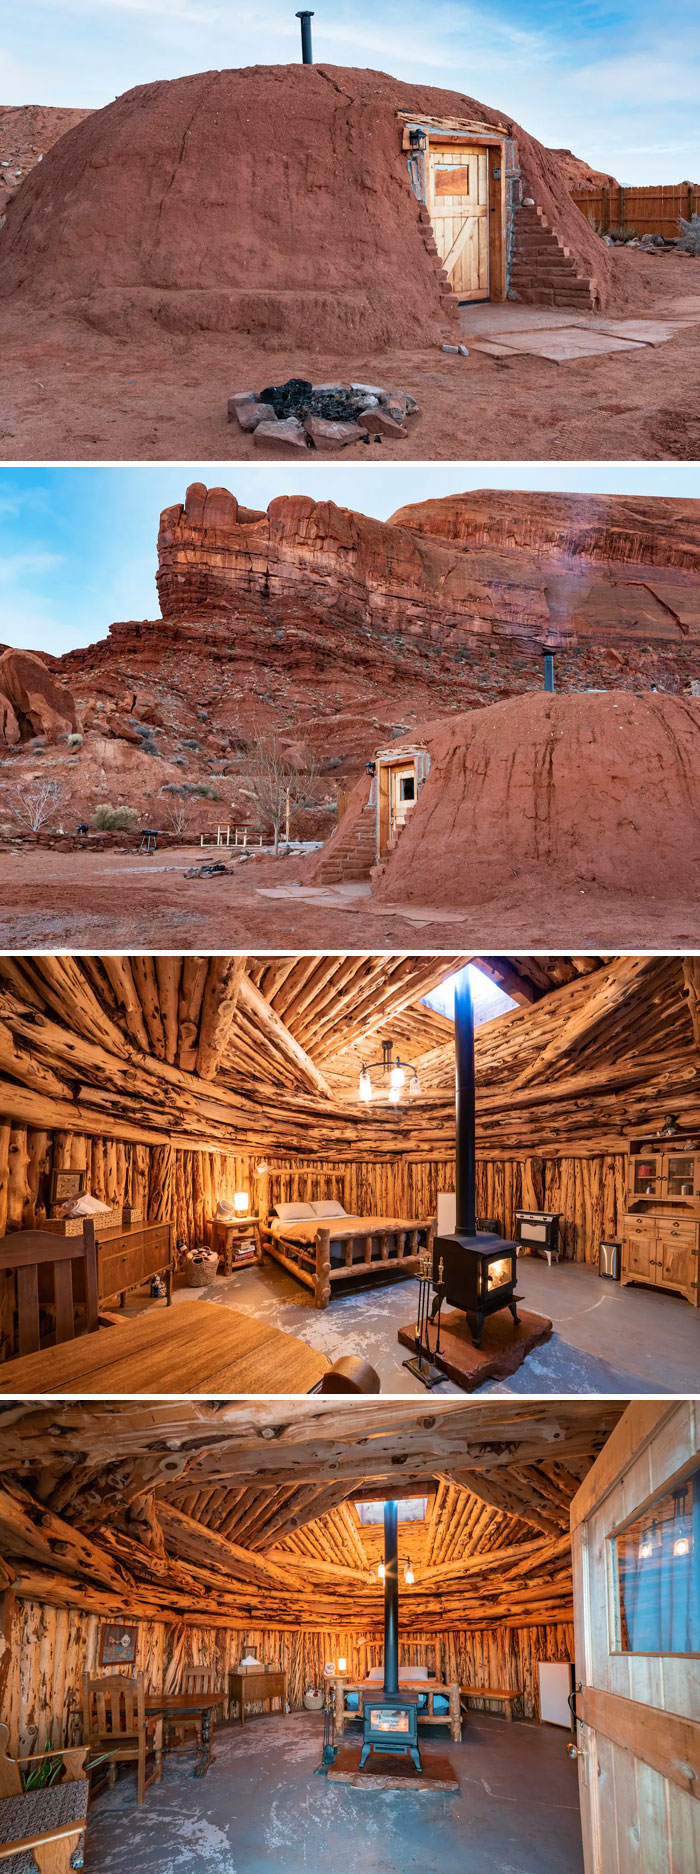 Nhà Navajo truyền thống. Thung lũng Oljato-Monument, Utah, Hoa Kỳ